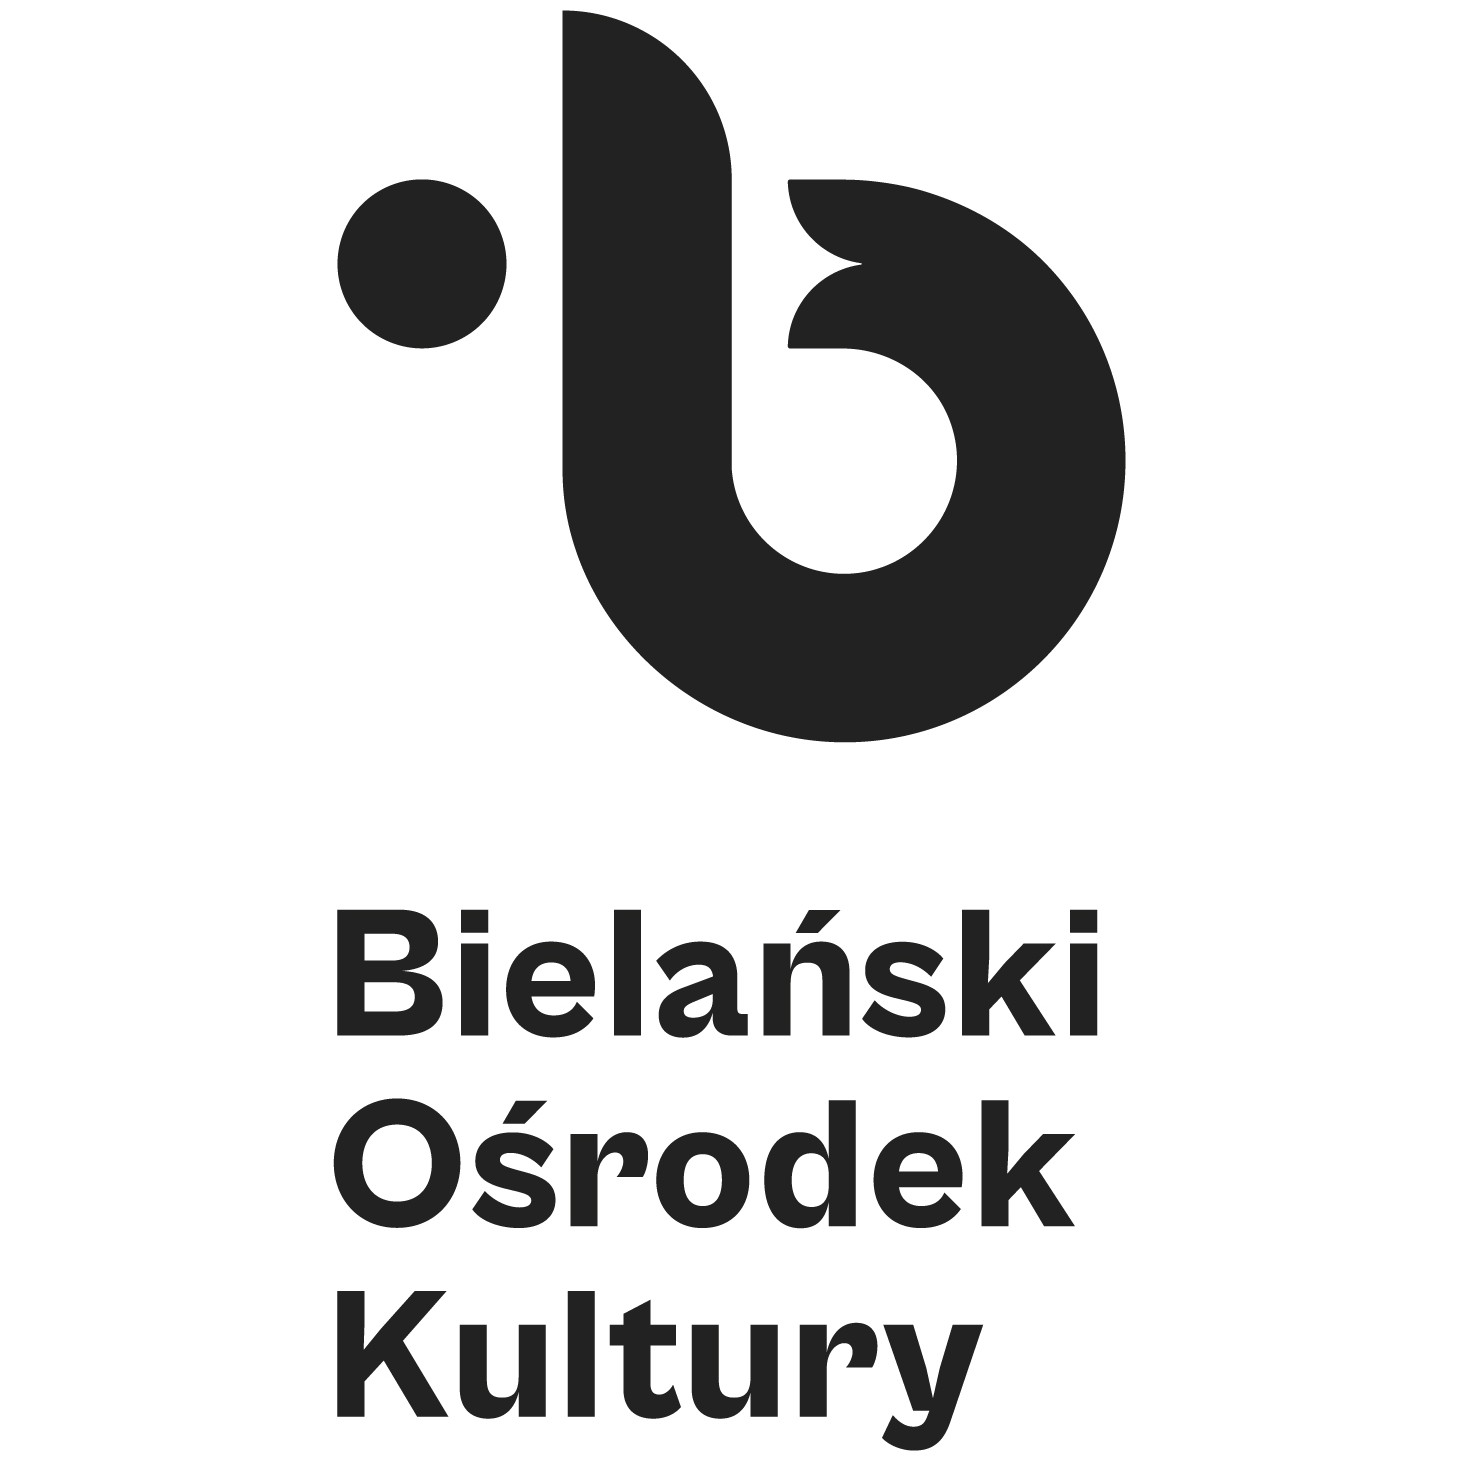 Profil organizacji - Bielański Osrodek Kultury - Spółdzielnia